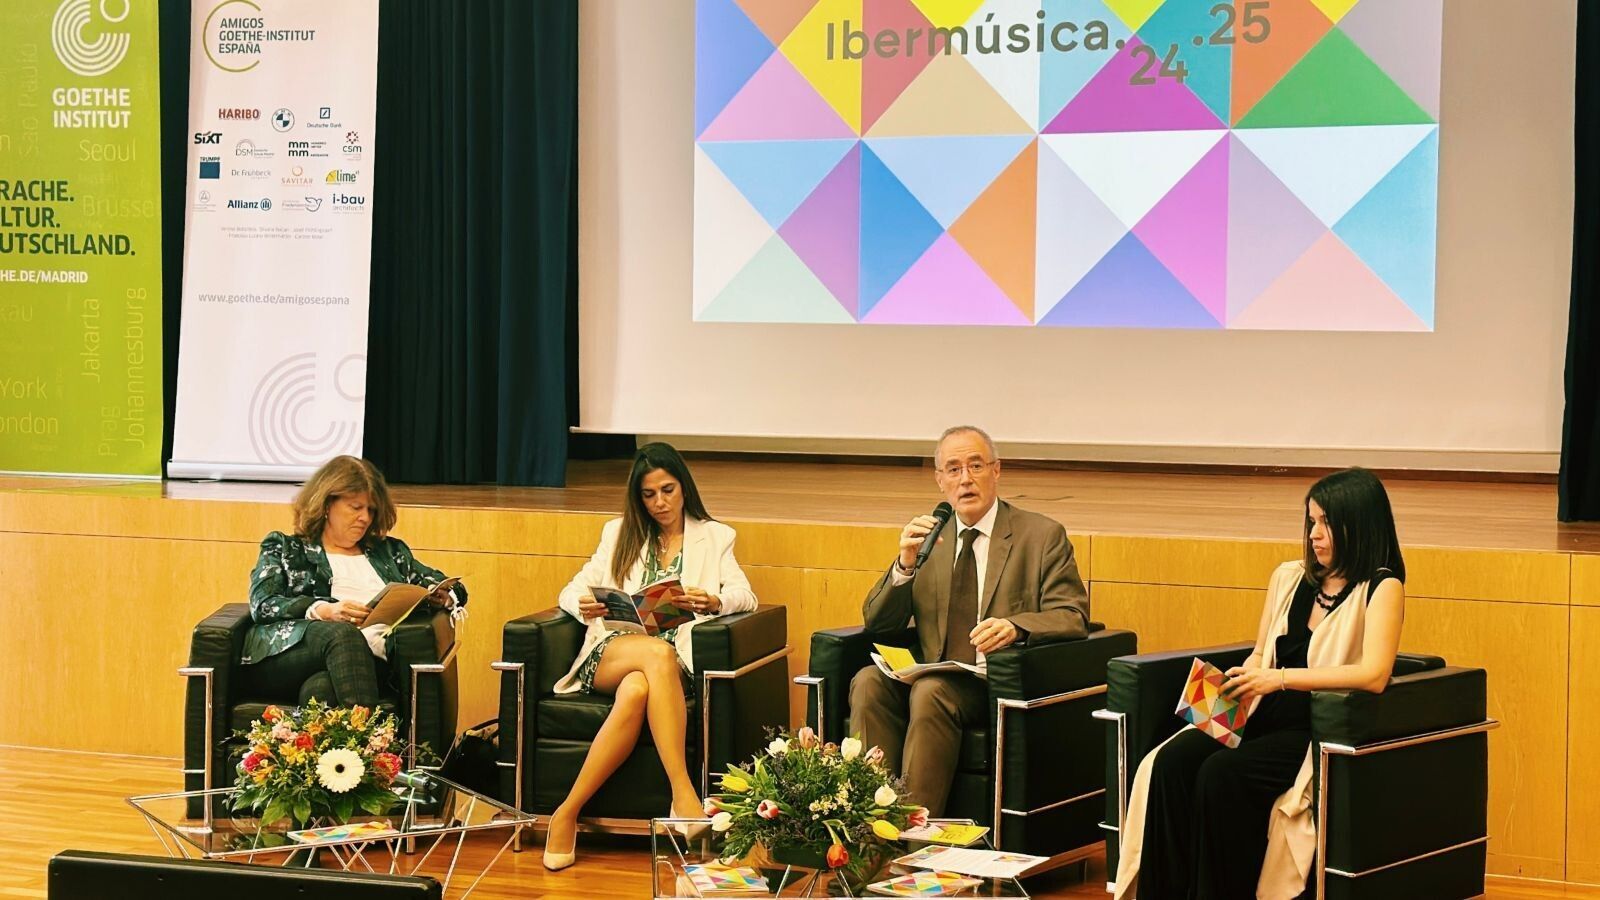 Ibermúsica celebra su 55º aniversario y la Filarmónica de Viena inaugurará la nueva temporada 